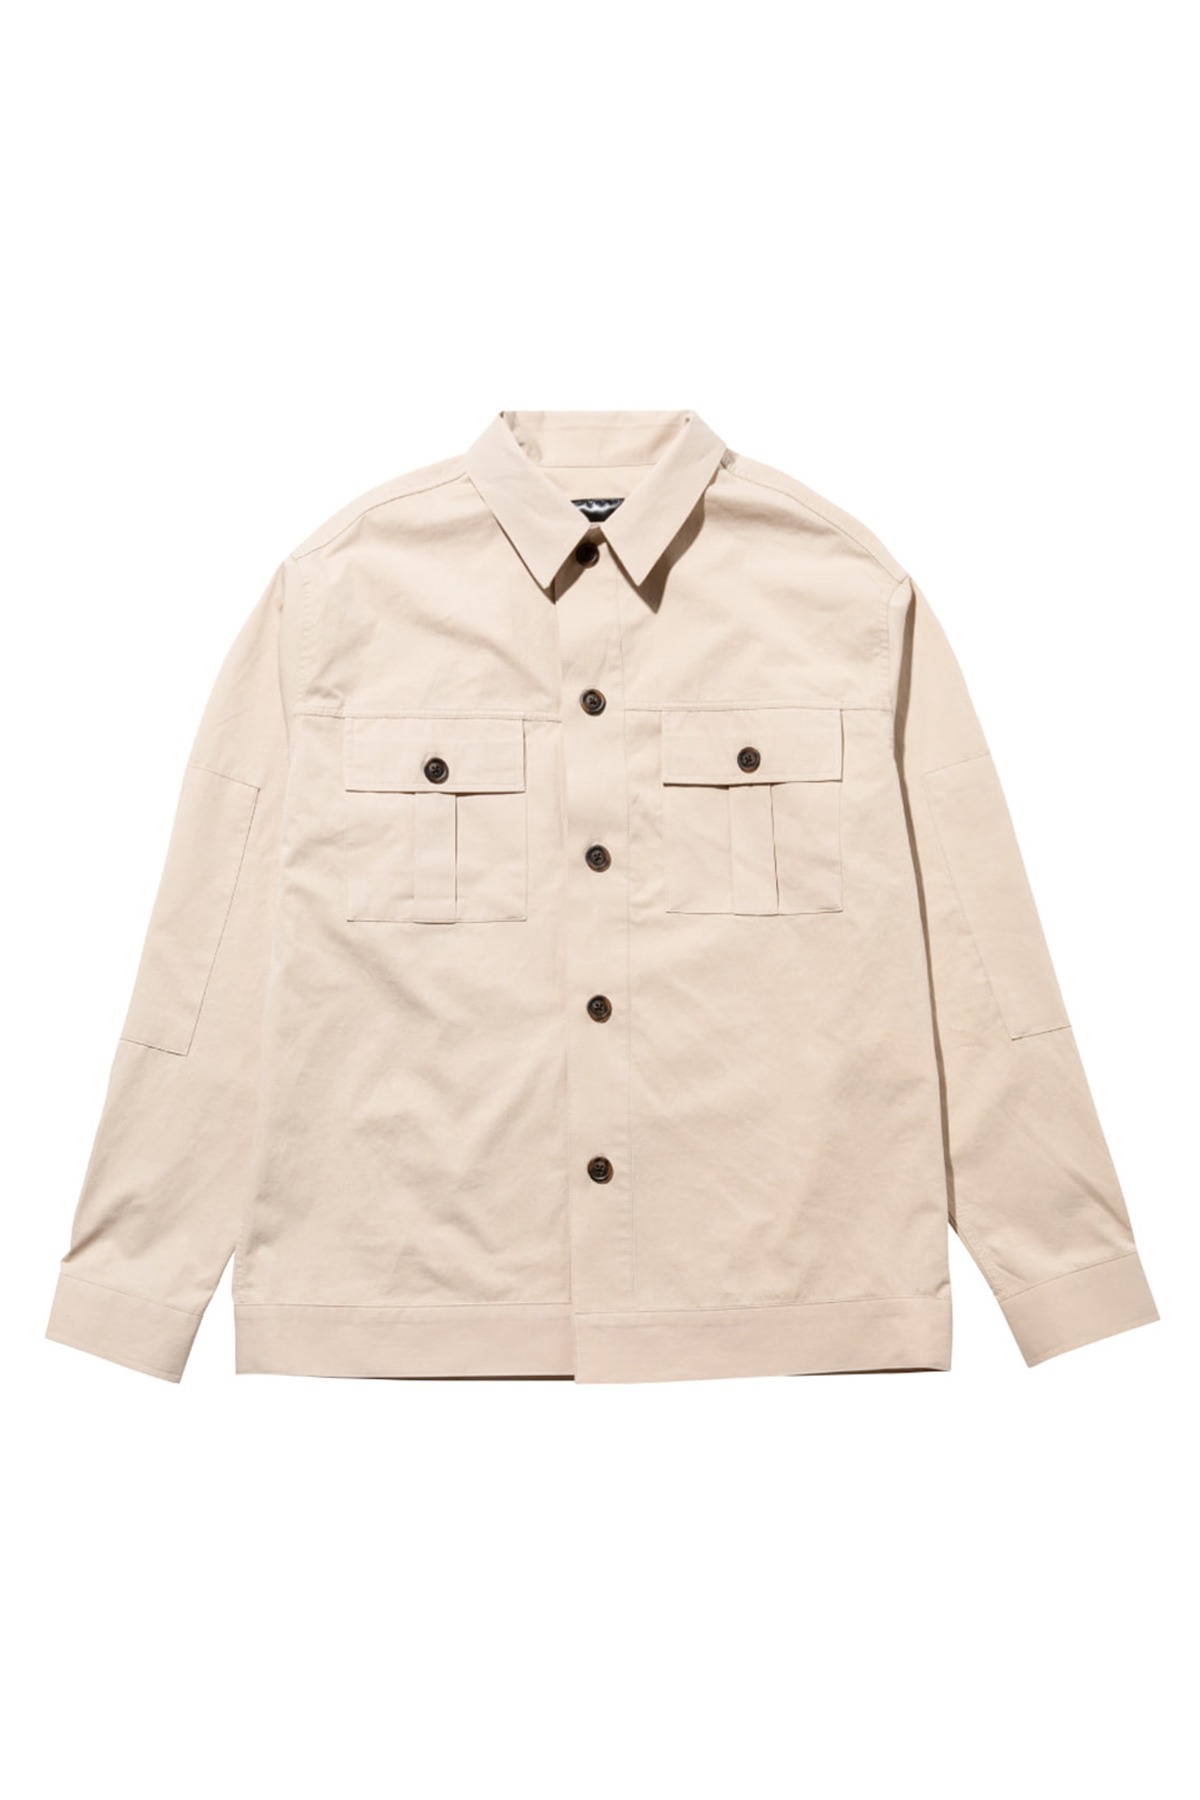 #jp36 Fatigue pocket shirt jacket (beige)